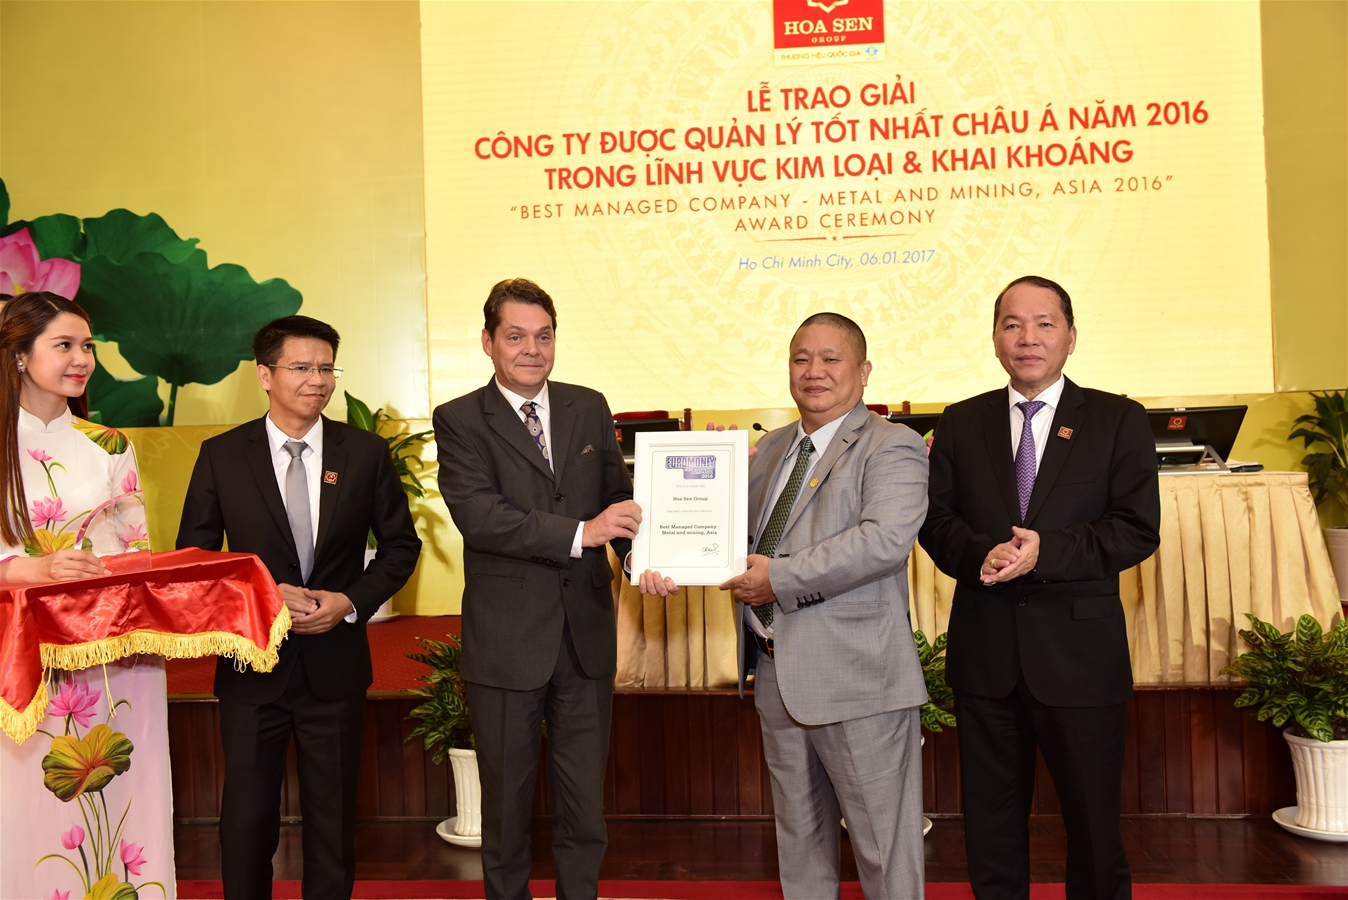 6_Đây là lần thứ 2 Tập đoàn Hoa Sen được bình chọn và trao giải thưởng “Công ty được quản lý tốt nhất Châu Á trong lĩnh vực kim loại và khai khoáng”